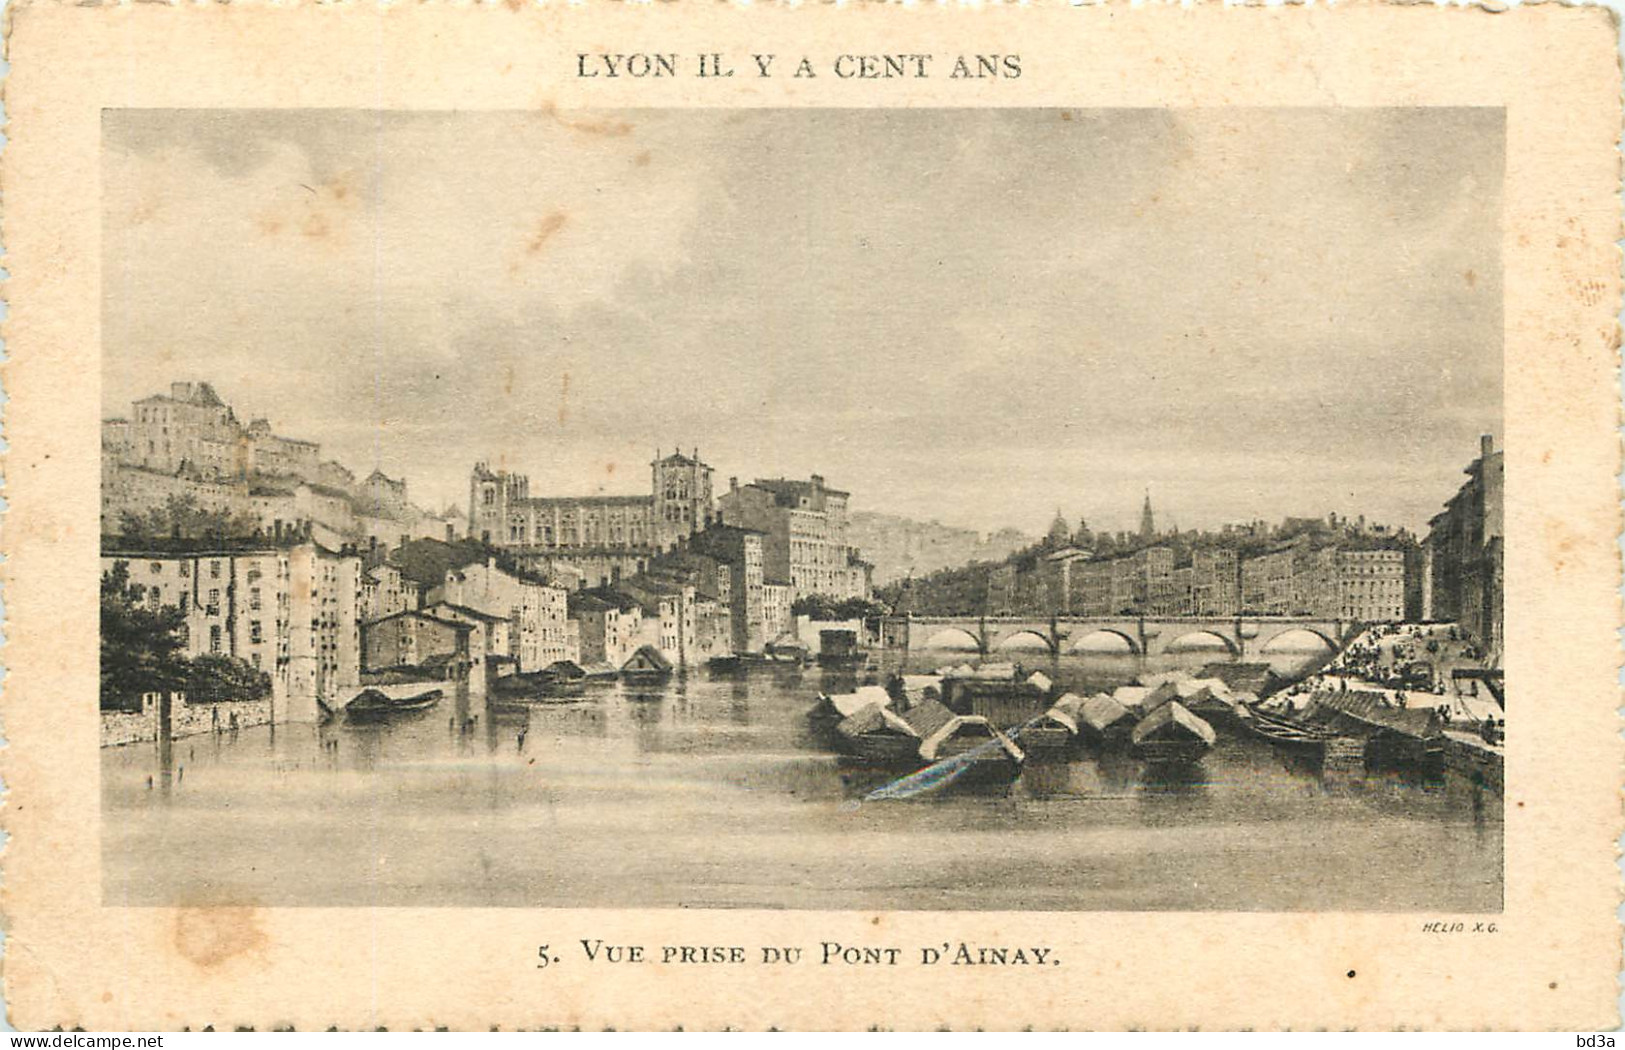   69  LYON  Il Y A 100 Ans  Vue Prise Du Pont D'Ainay  Litho - Lyon 2